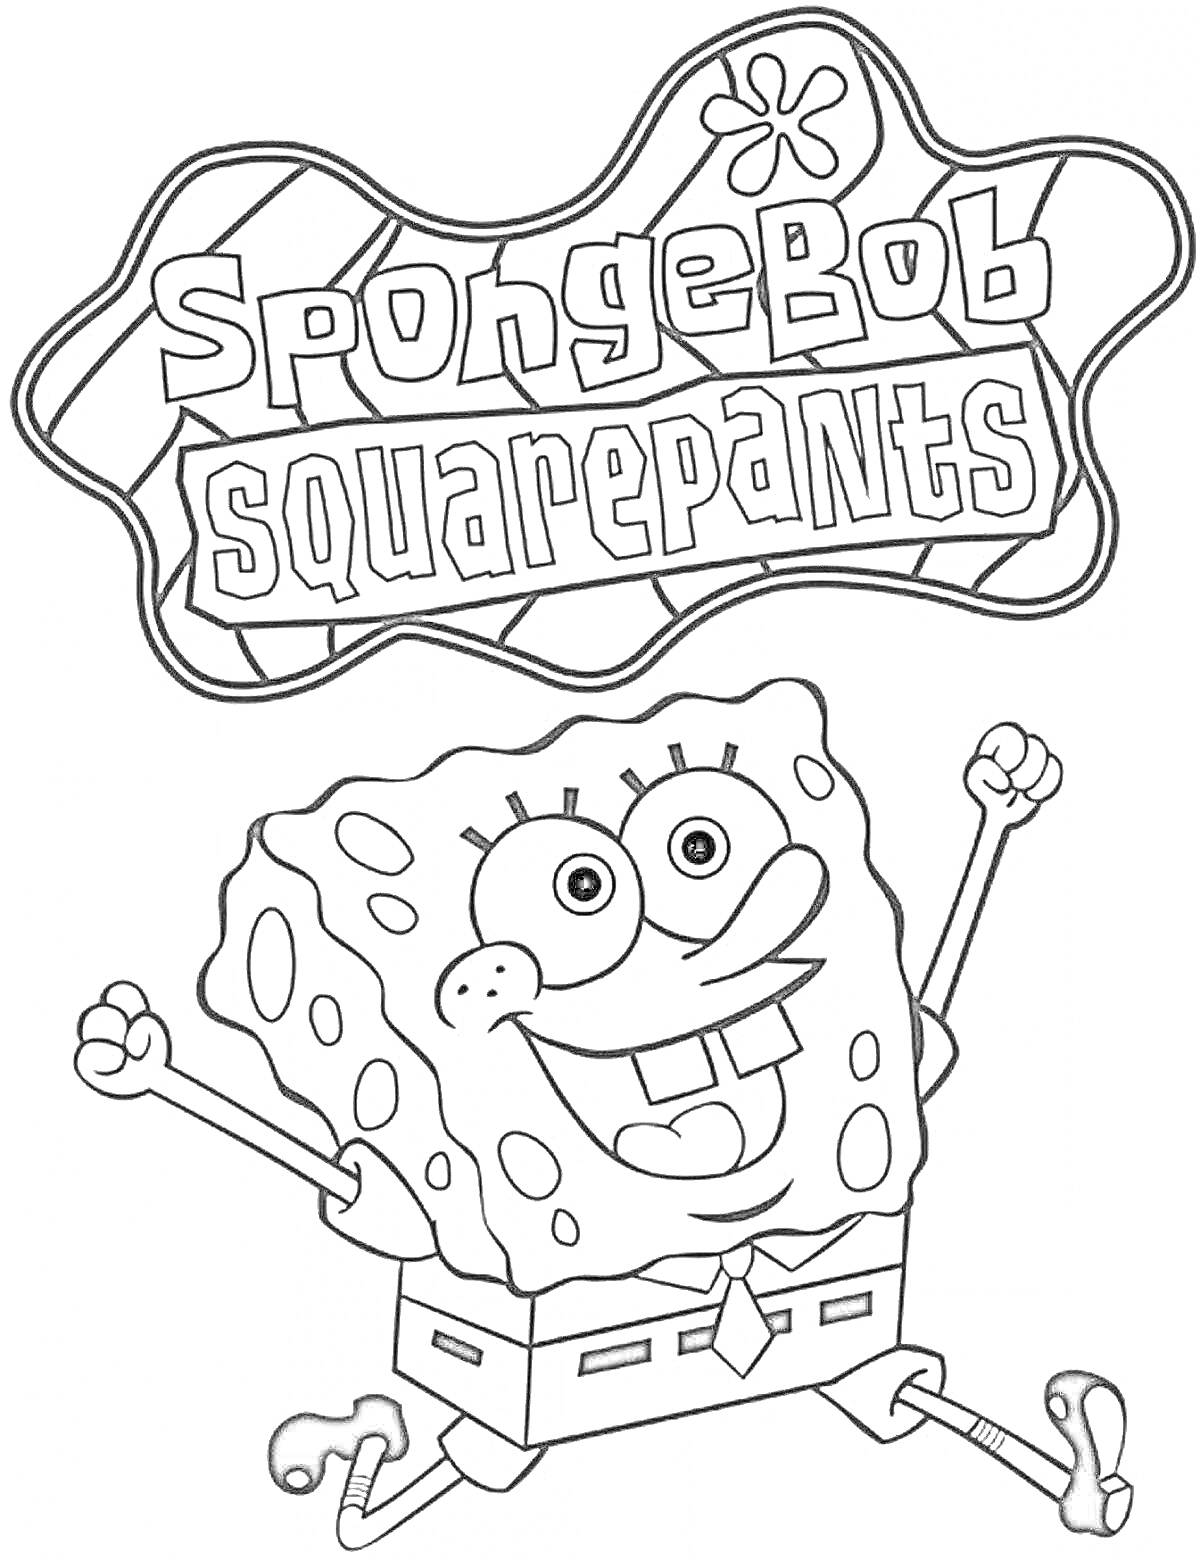 Раскраска Спанч Боб с логотипом мультсериала, круглый бюст, руки подняты вверх, обе ноги подняты